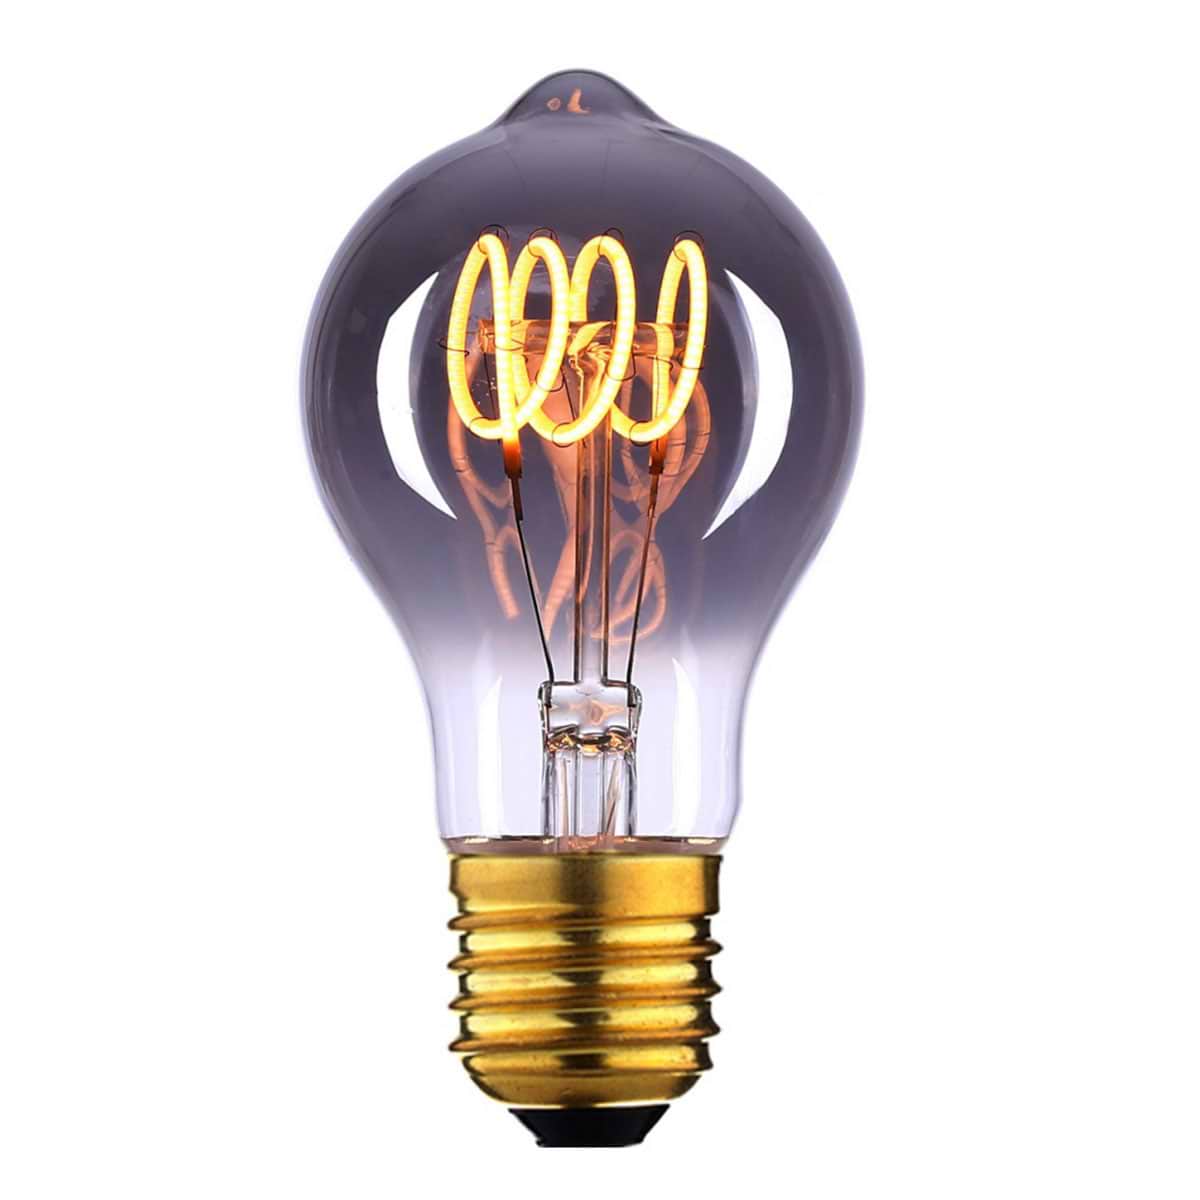 LED lamp 9W DIM, Spiraal, voor standaardlamp E27 fitting, 9 Smoke. Decoratief en dimbaar. HIGH LIGHT - L260019 - Webo Verlichting